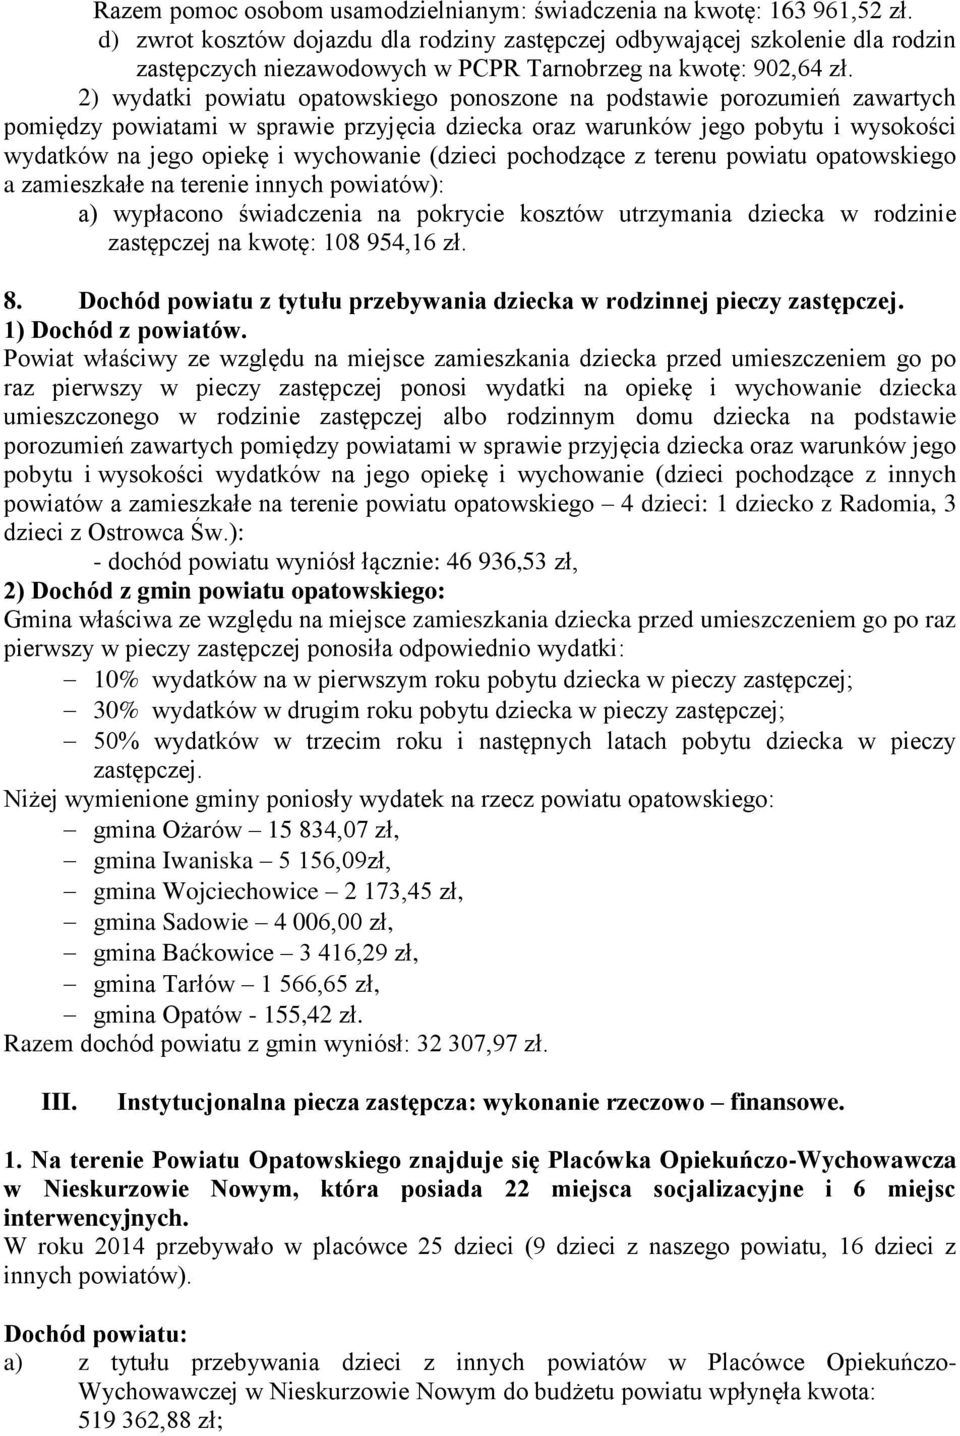 2) wydatki powiatu opatowskiego ponoszone na podstawie porozumień zawartych pomiędzy powiatami w sprawie przyjęcia dziecka oraz warunków jego pobytu i wysokości wydatków na jego opiekę i wychowanie